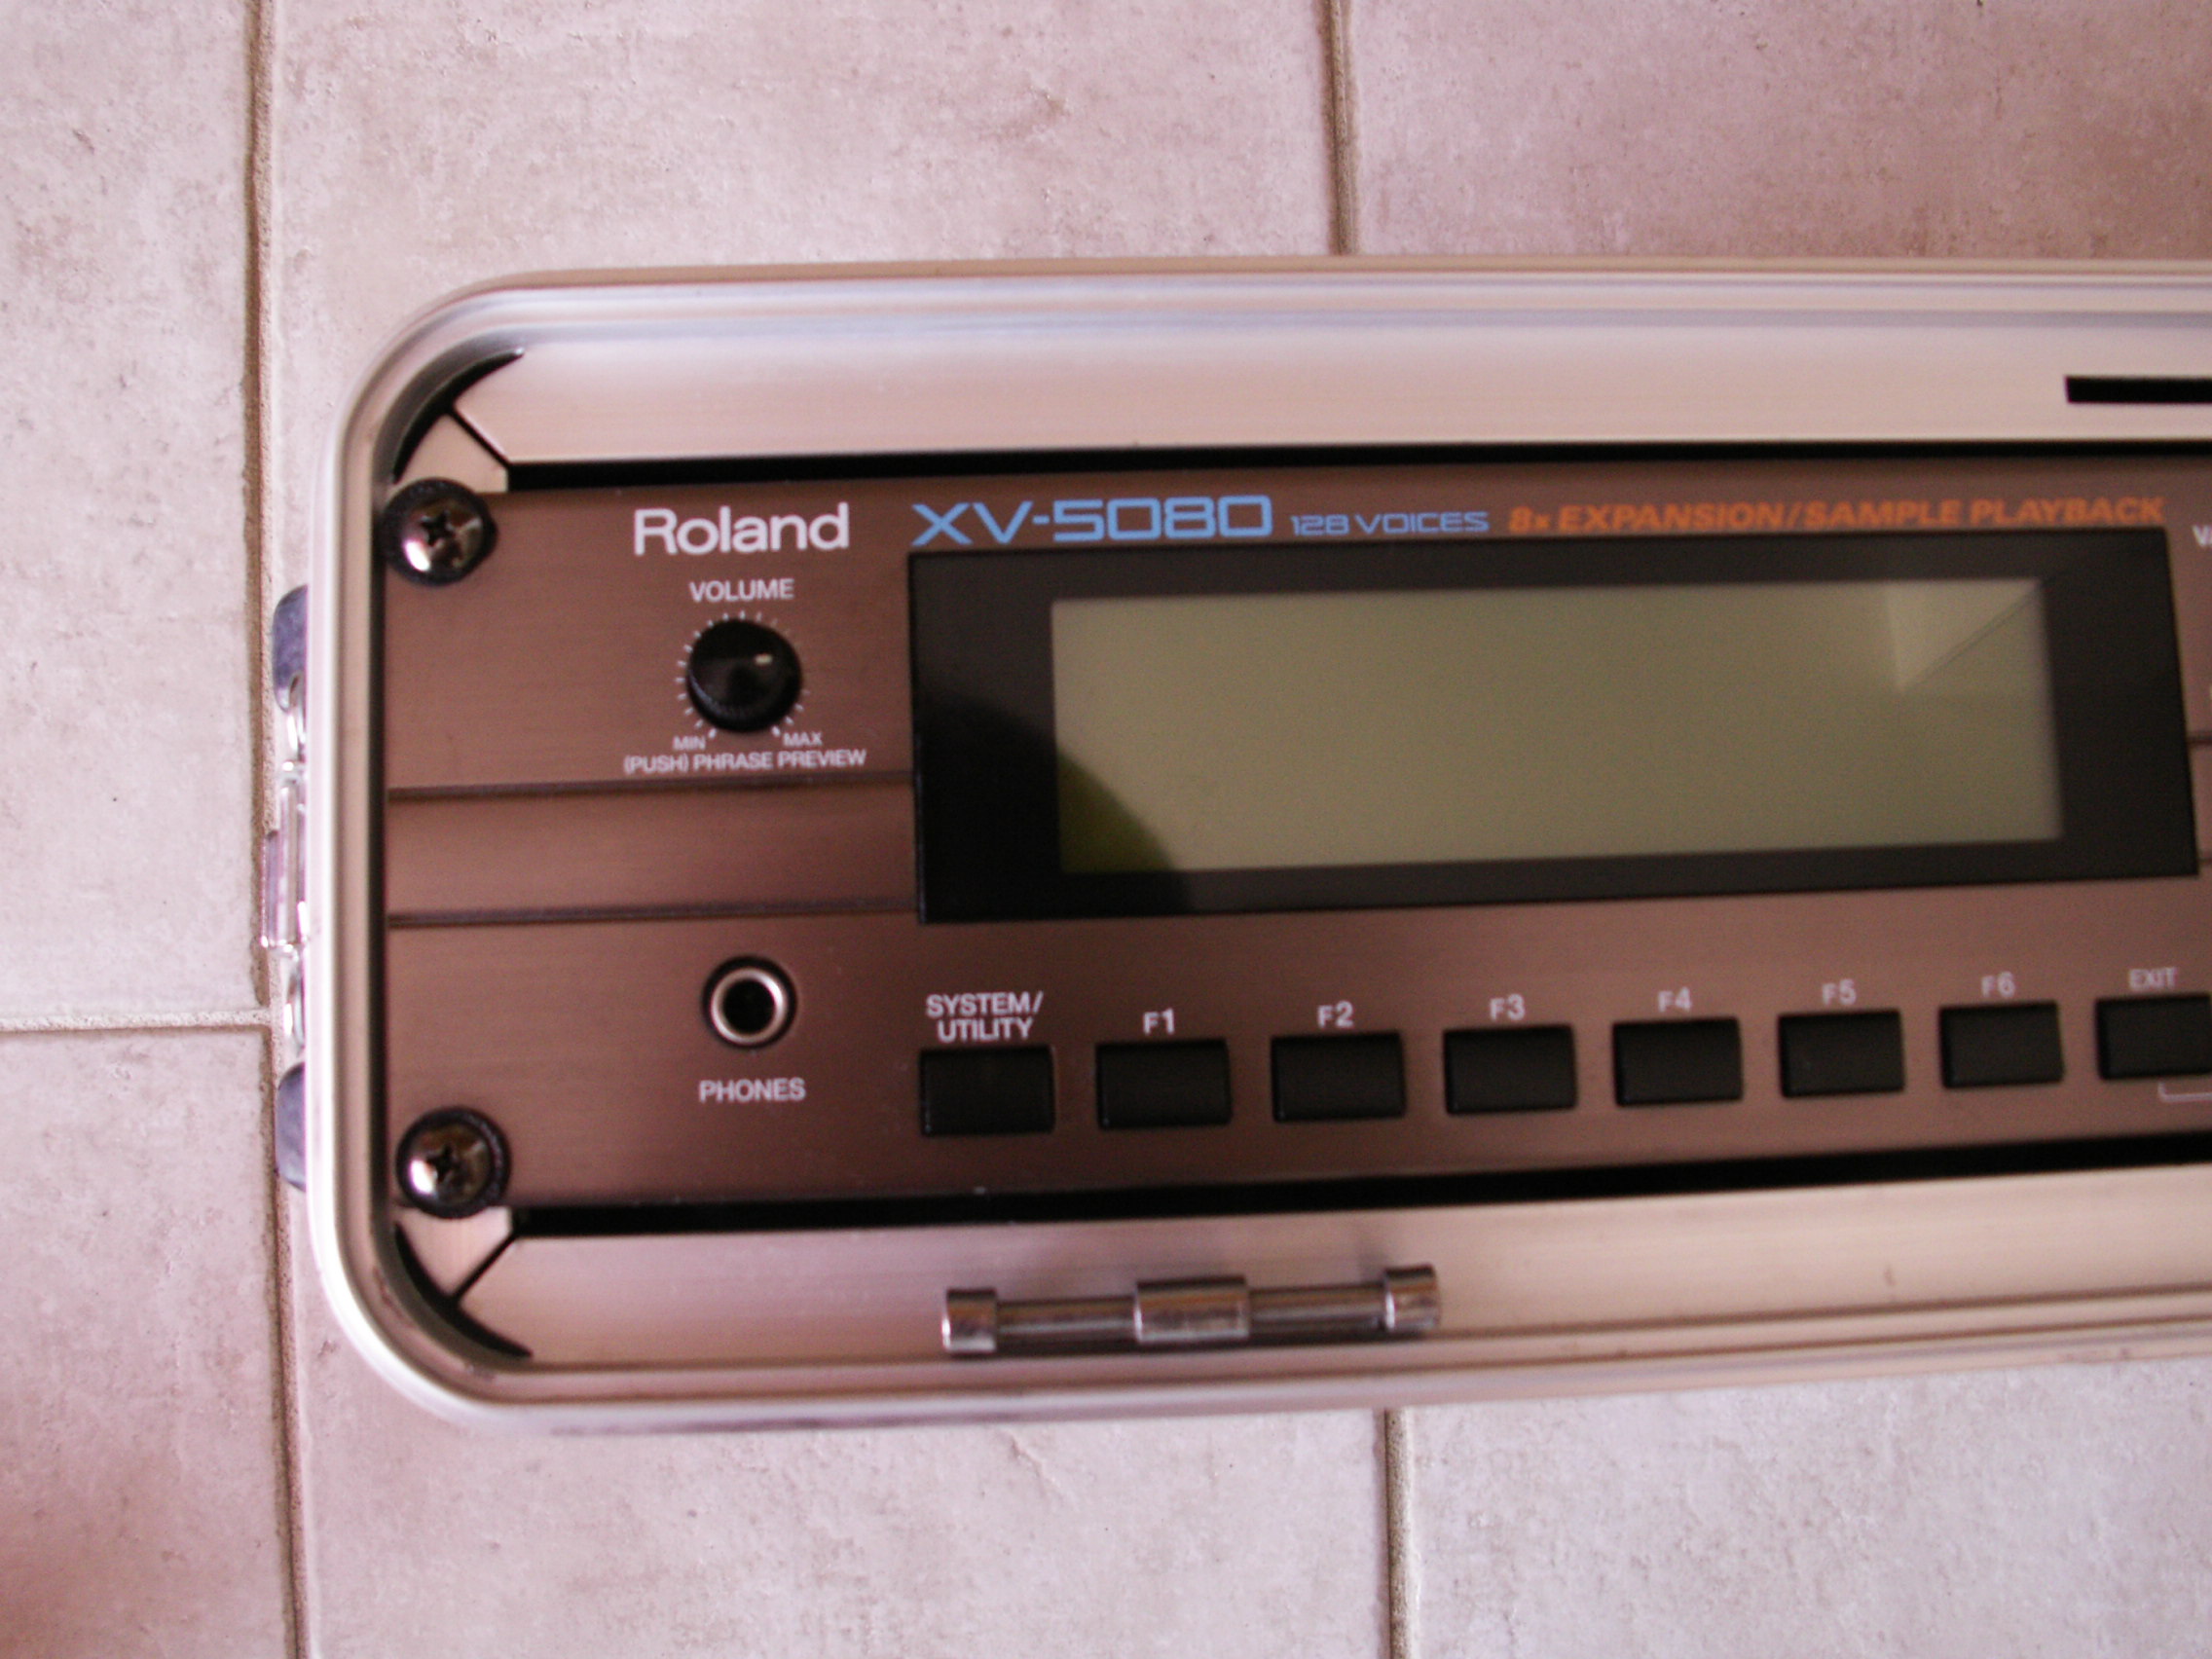 roland xv 5080 instrument definition cakewalk sonar